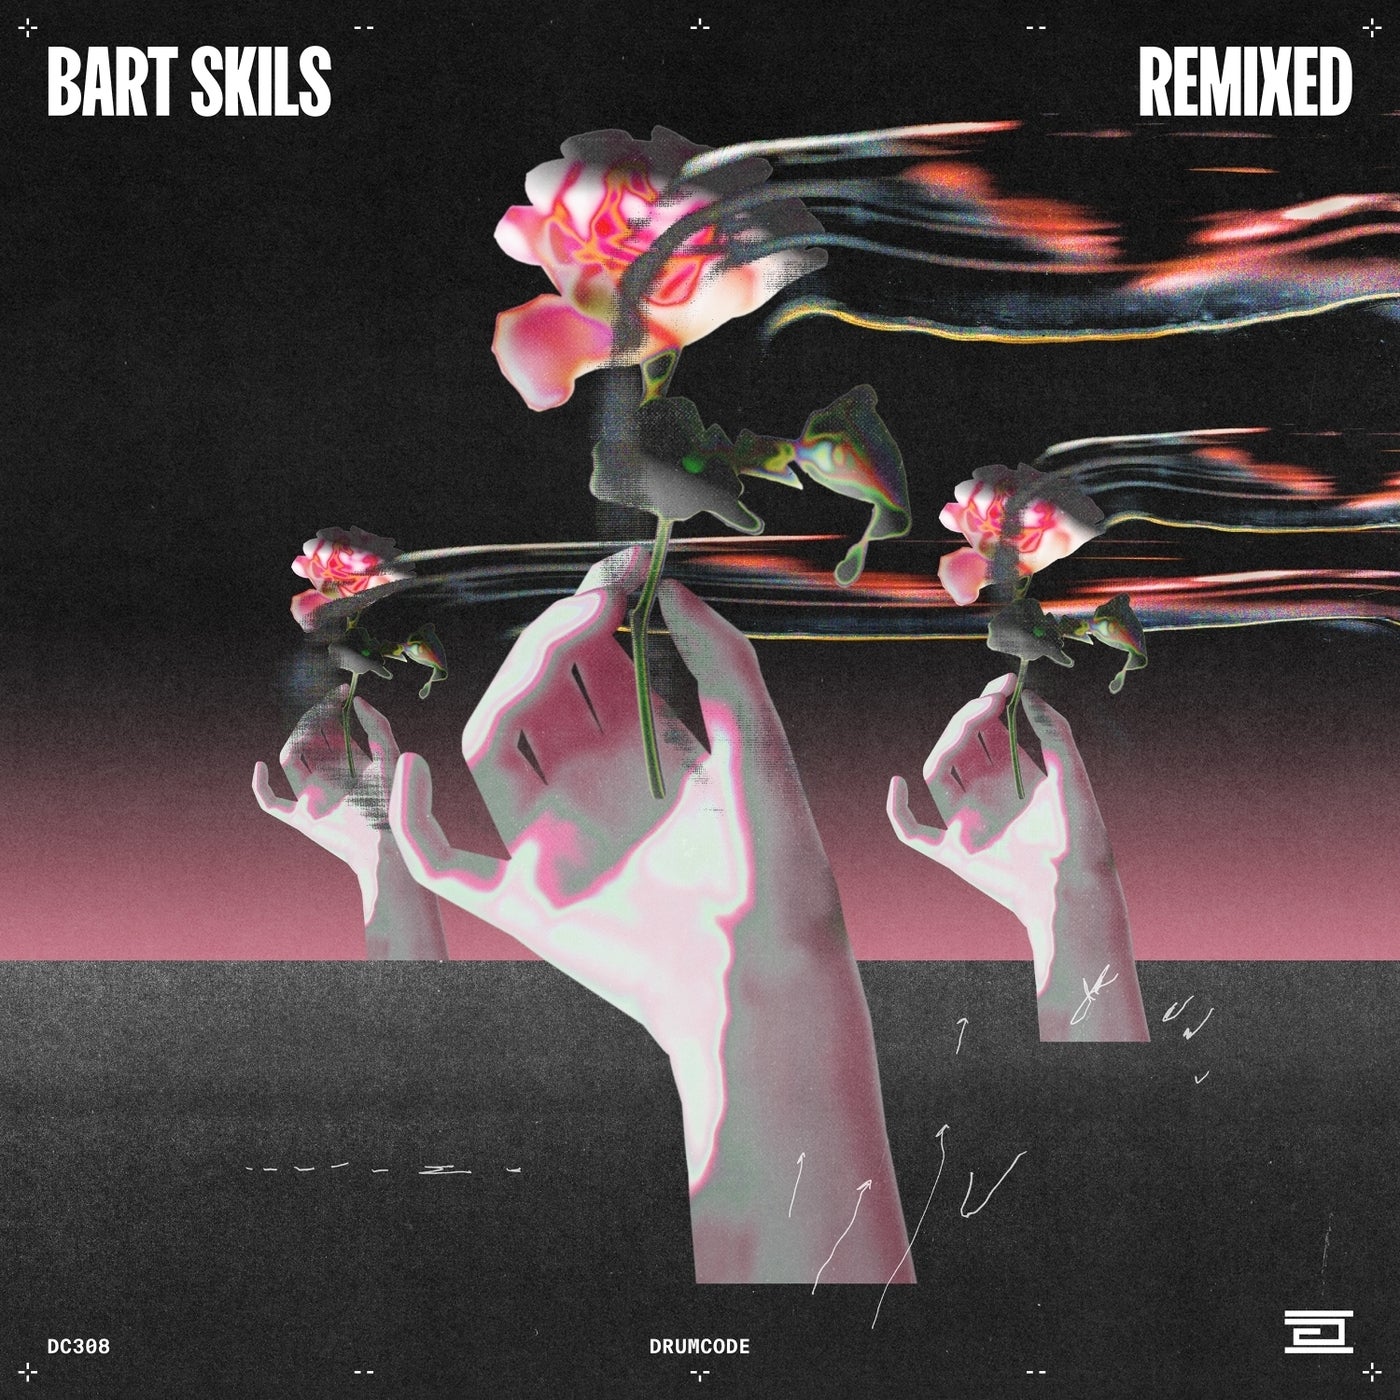 image cover: Bart Skils - Bart Skils Remixed on Drumcode